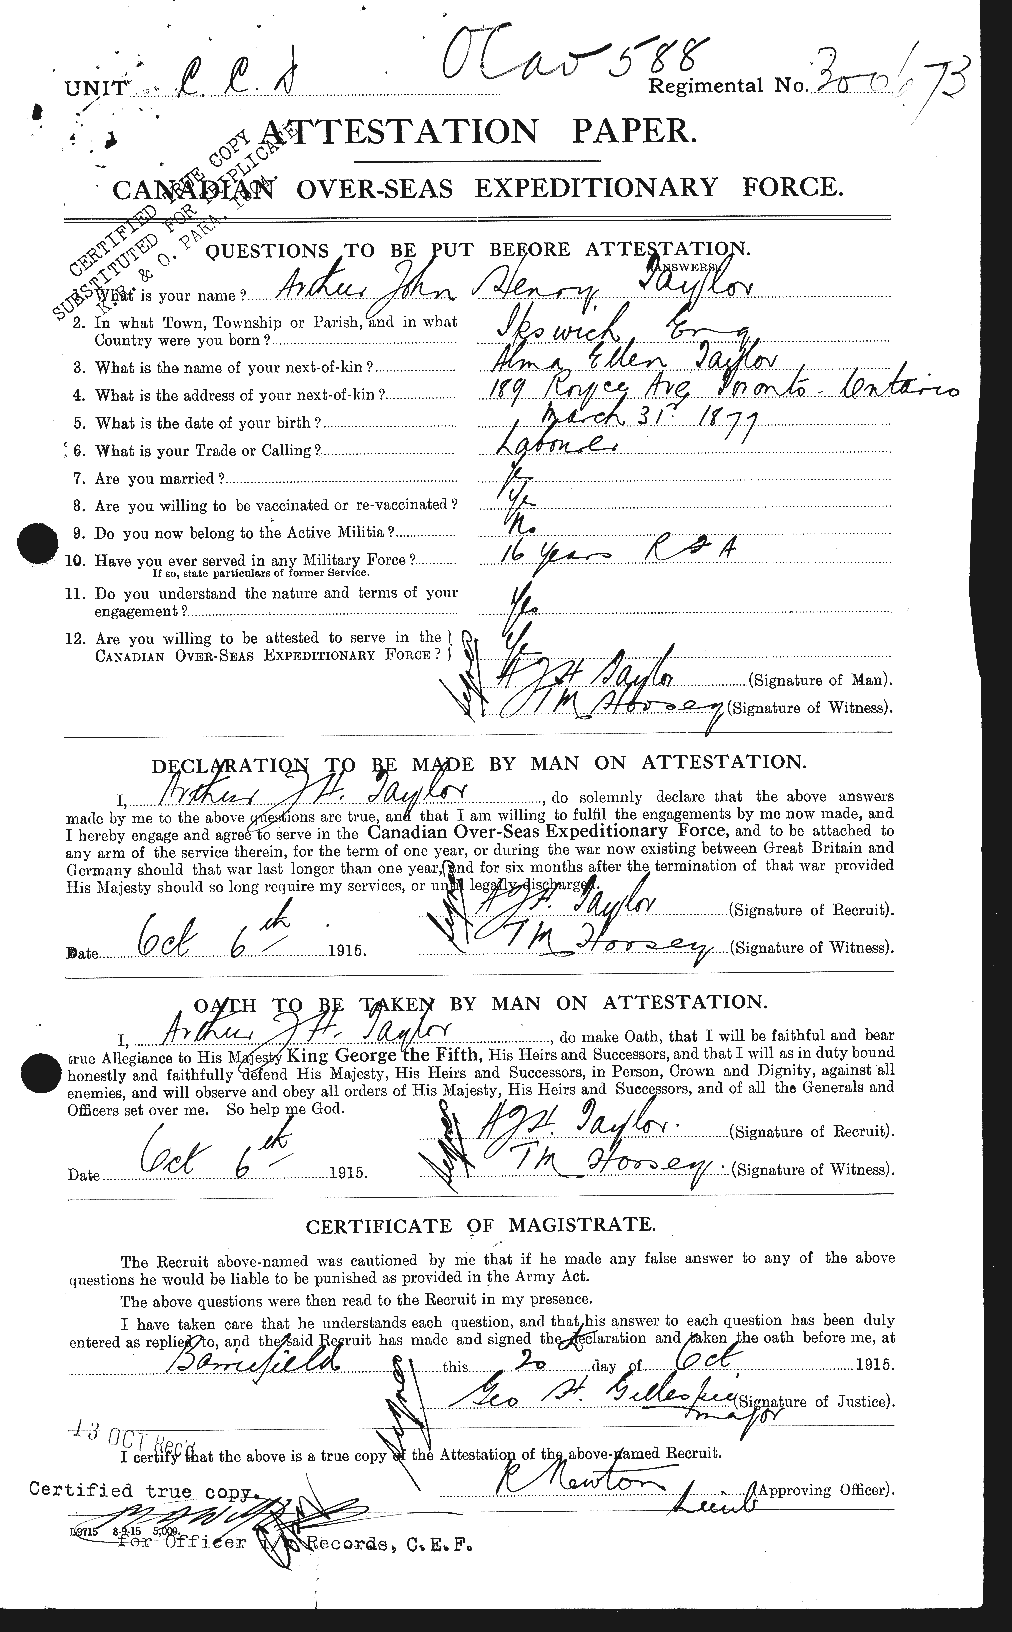 Dossiers du Personnel de la Première Guerre mondiale - CEC 626735a